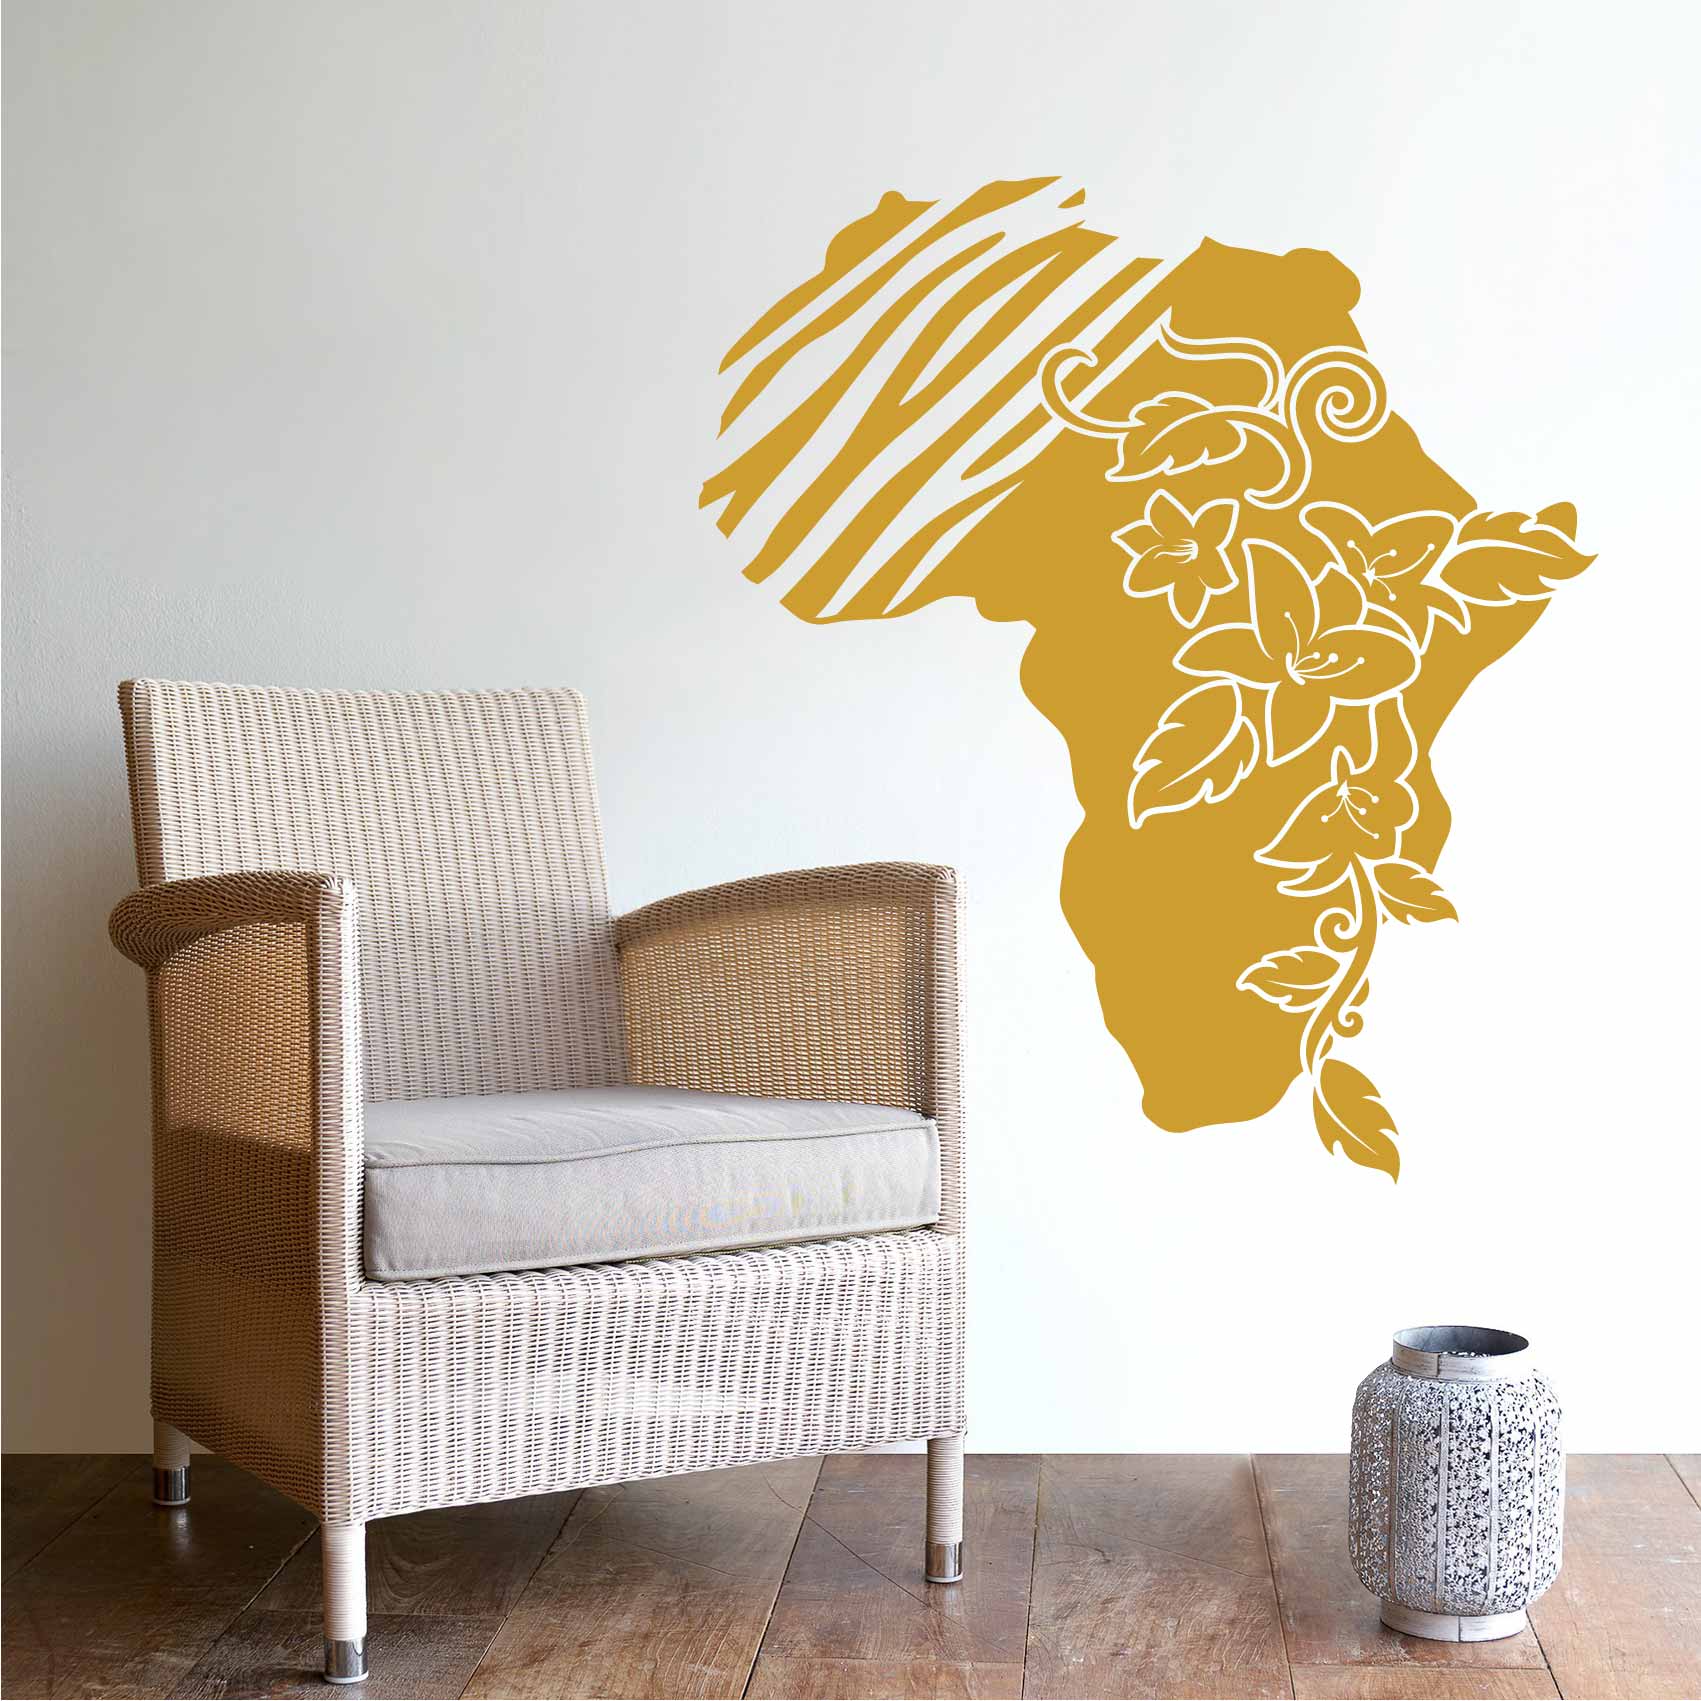 stickers-mural-afrique-ref6afrique-stickers-muraux-afrique-autocollant-deco-mur-salon-chambre-sticker-mural-africa